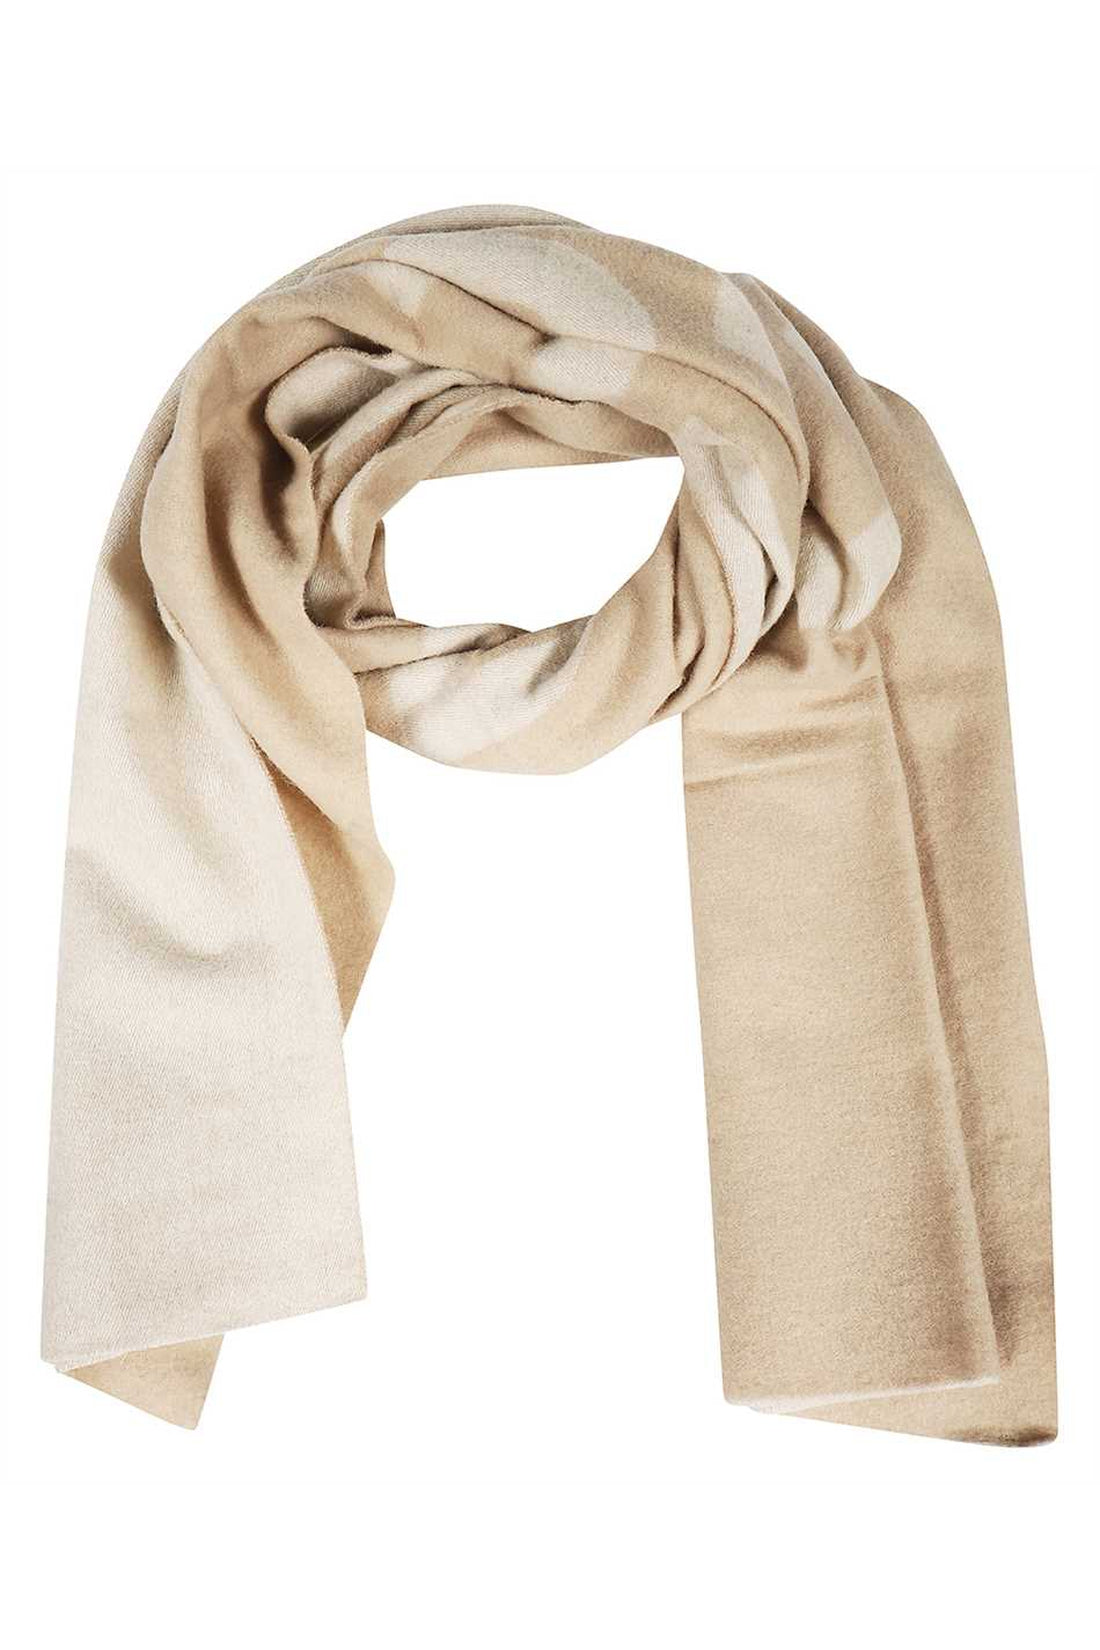 Les Deux-OUTLET-SALE-Wool scarf-ARCHIVIST